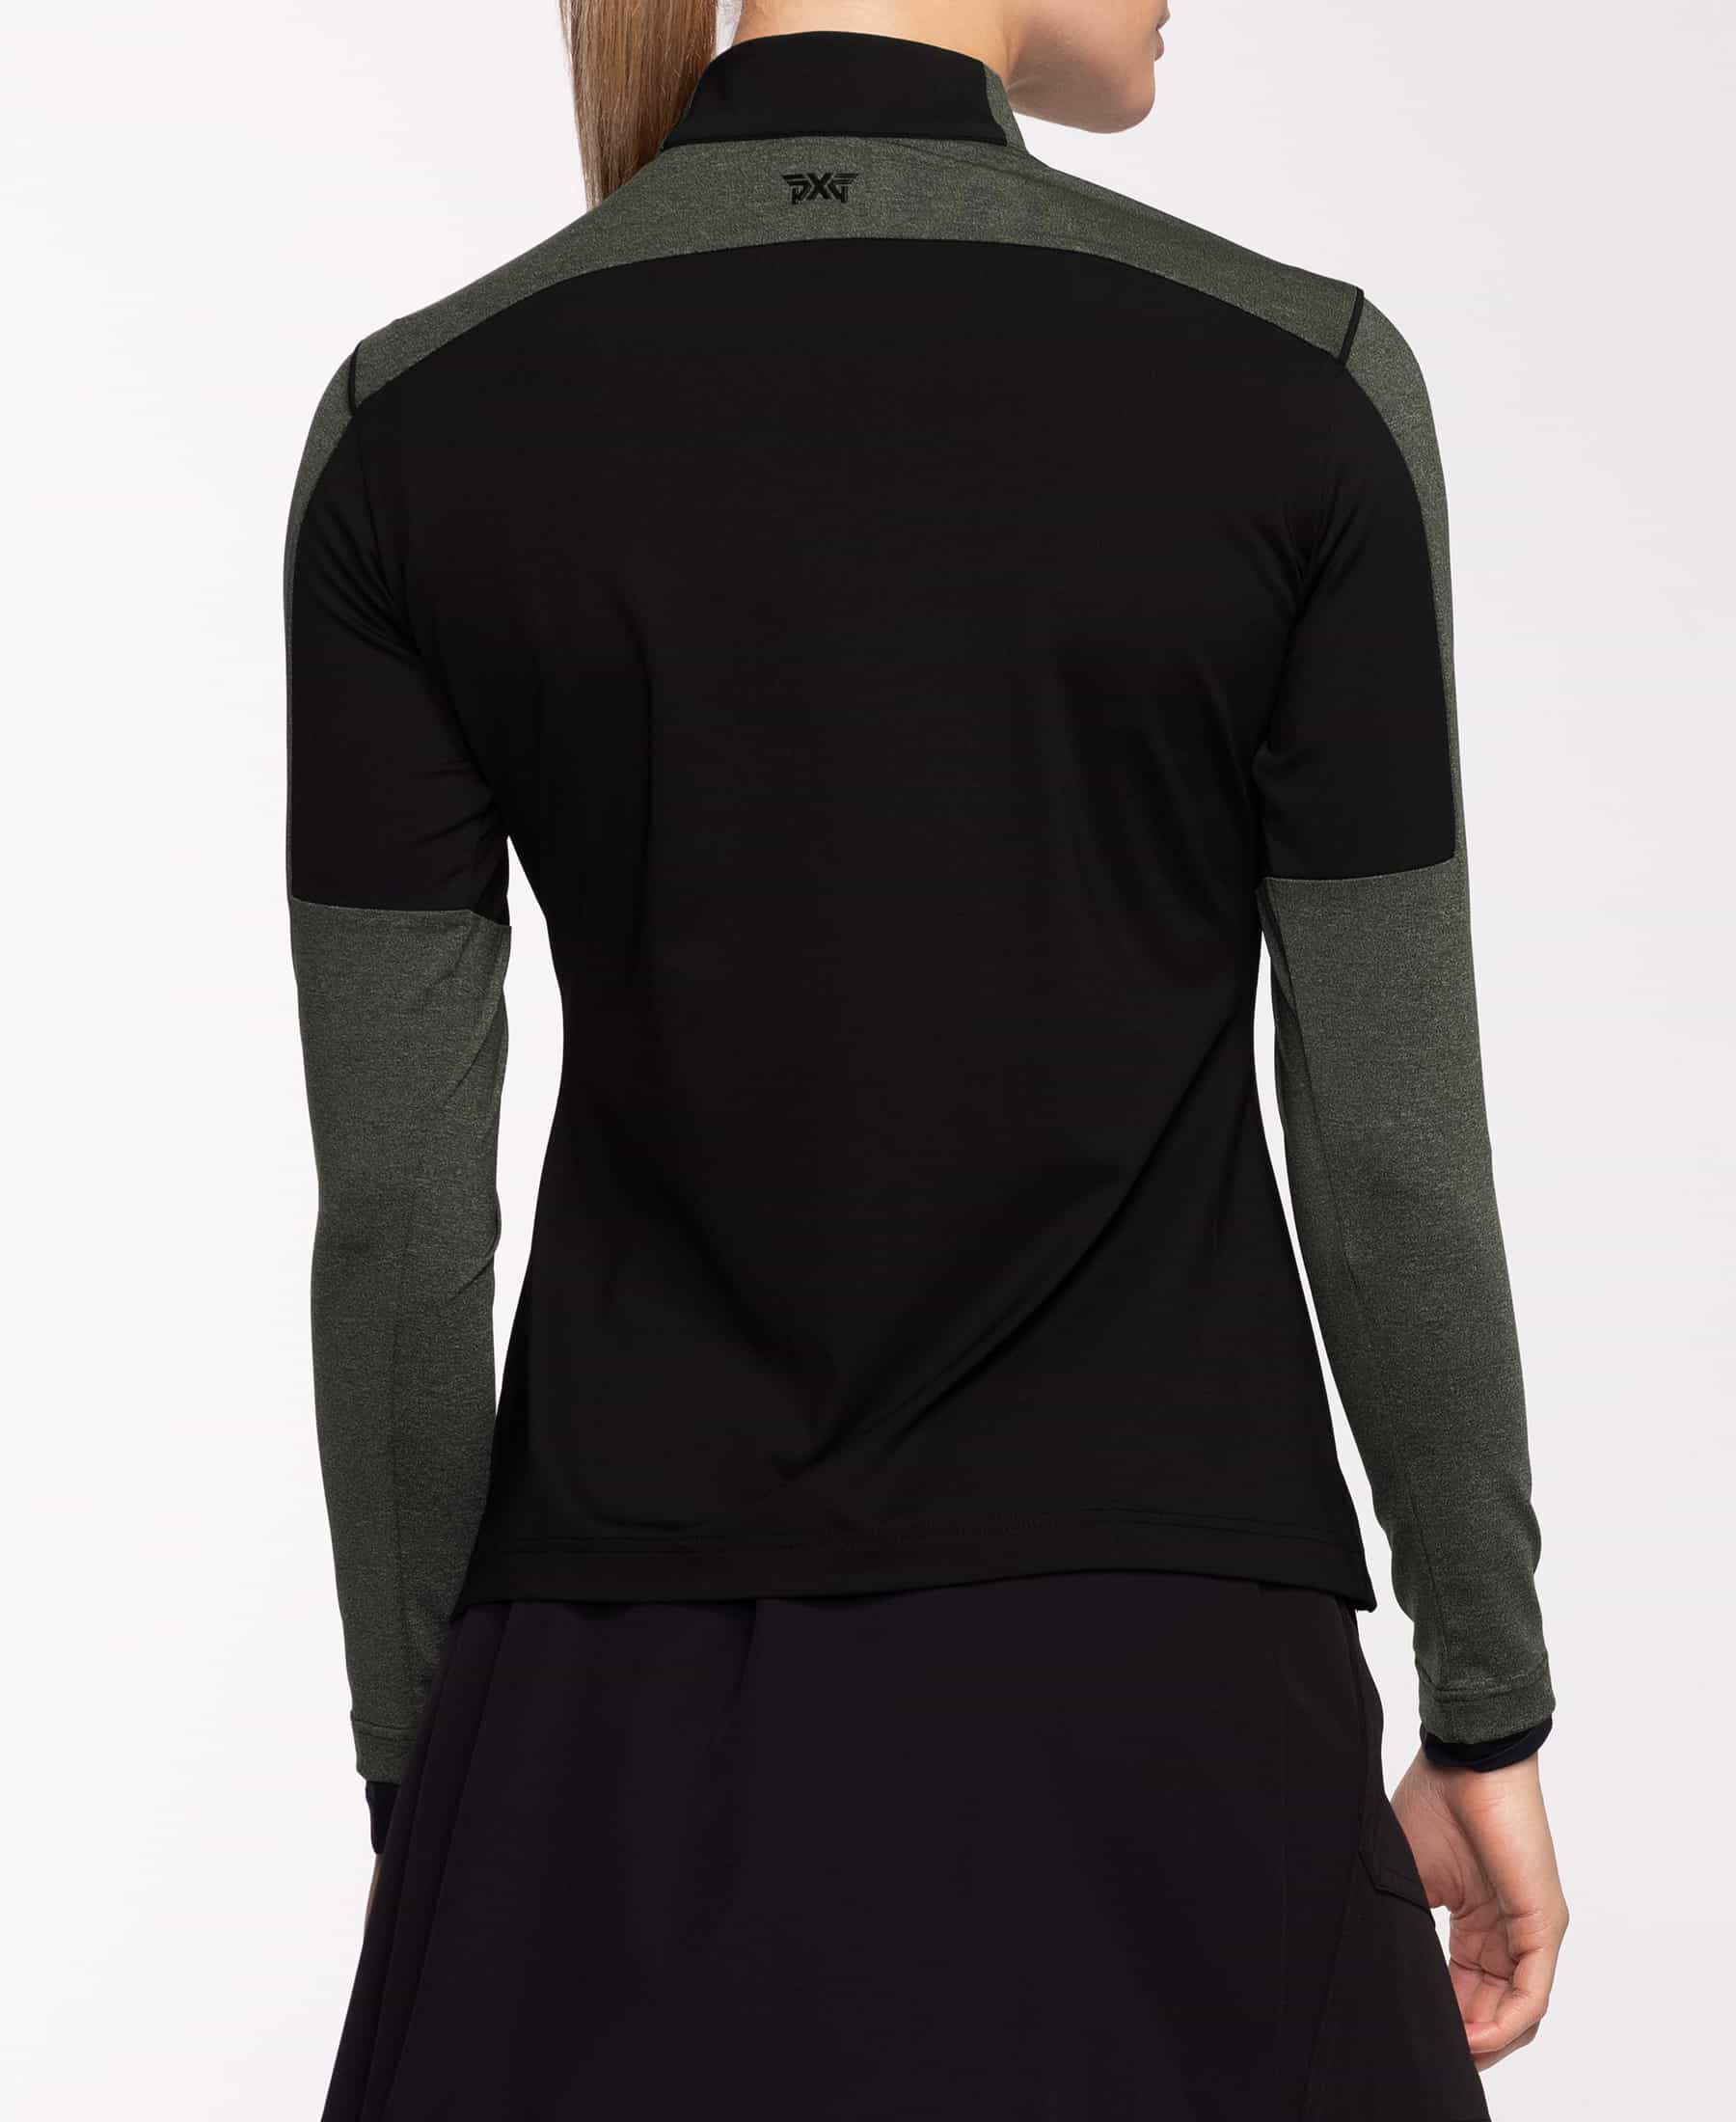 Buy Snap Neck 1/4 Zip Pullover | PXG